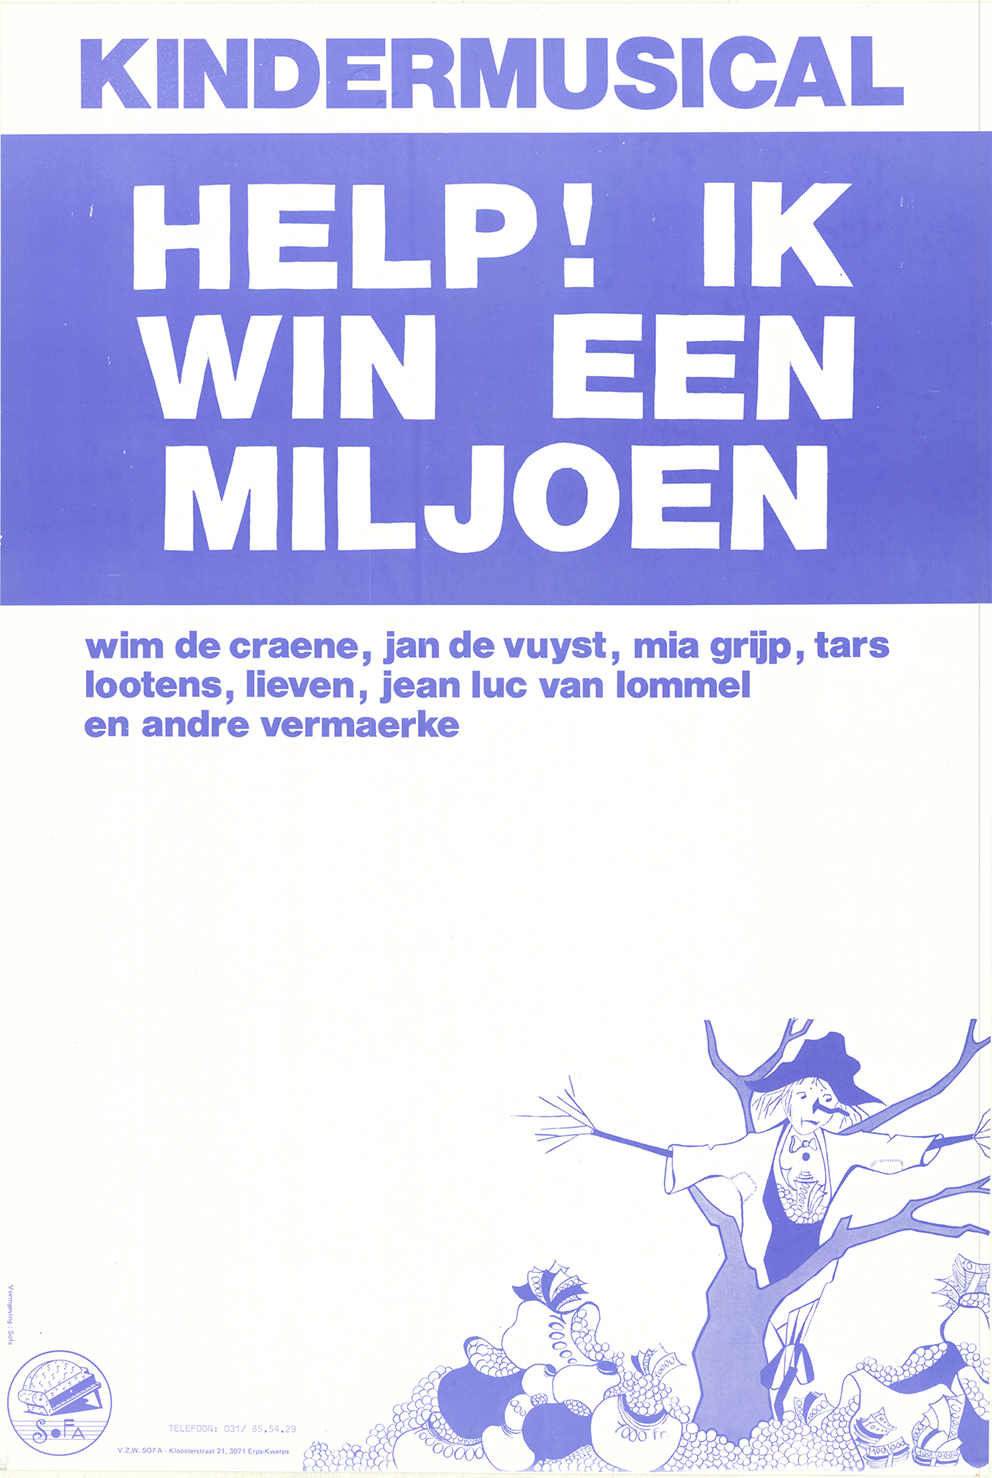 1977 Affiche Kindermusical Help ik win een miljoen van Jan De Vuyst